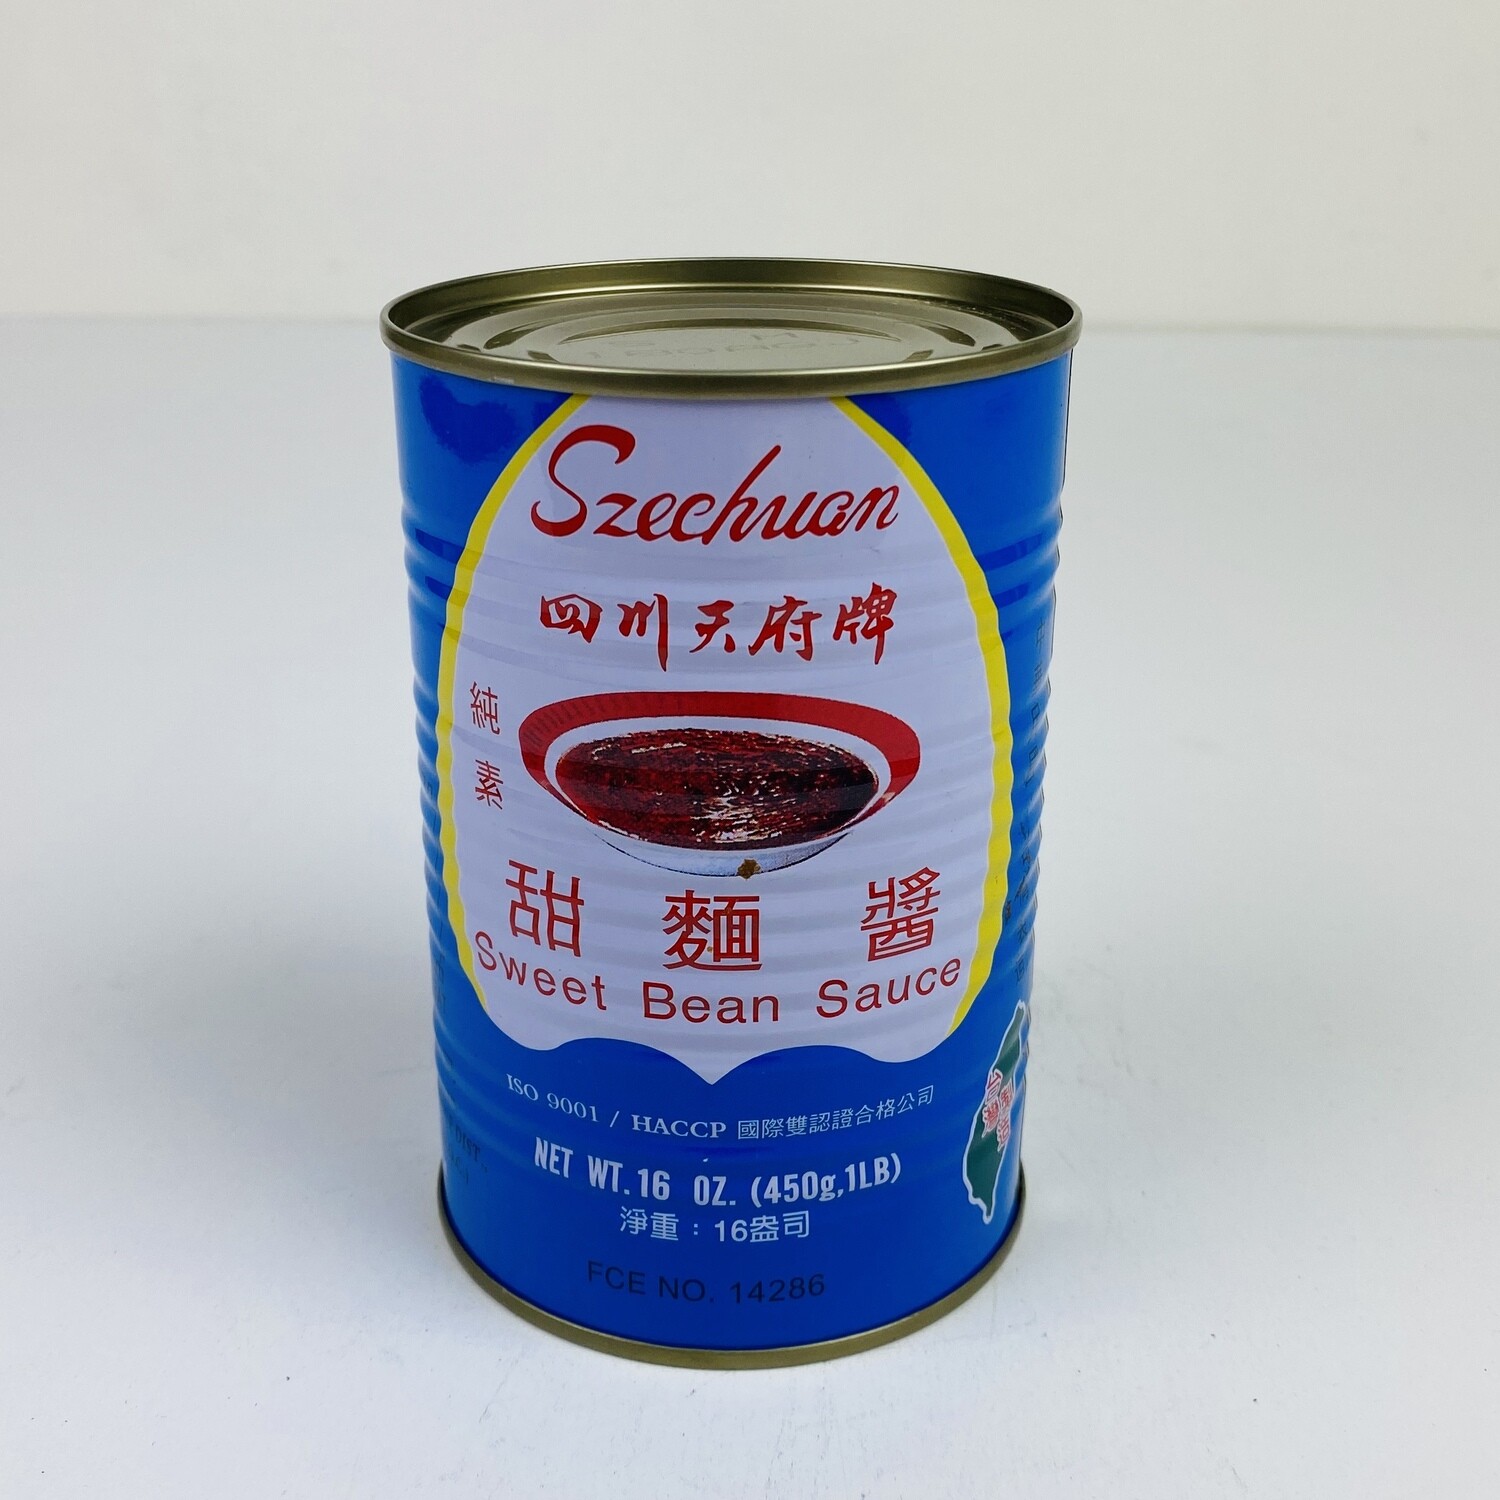 SZECHUAN Sweet Bean Sauce 16oz 四川天府甜面酱